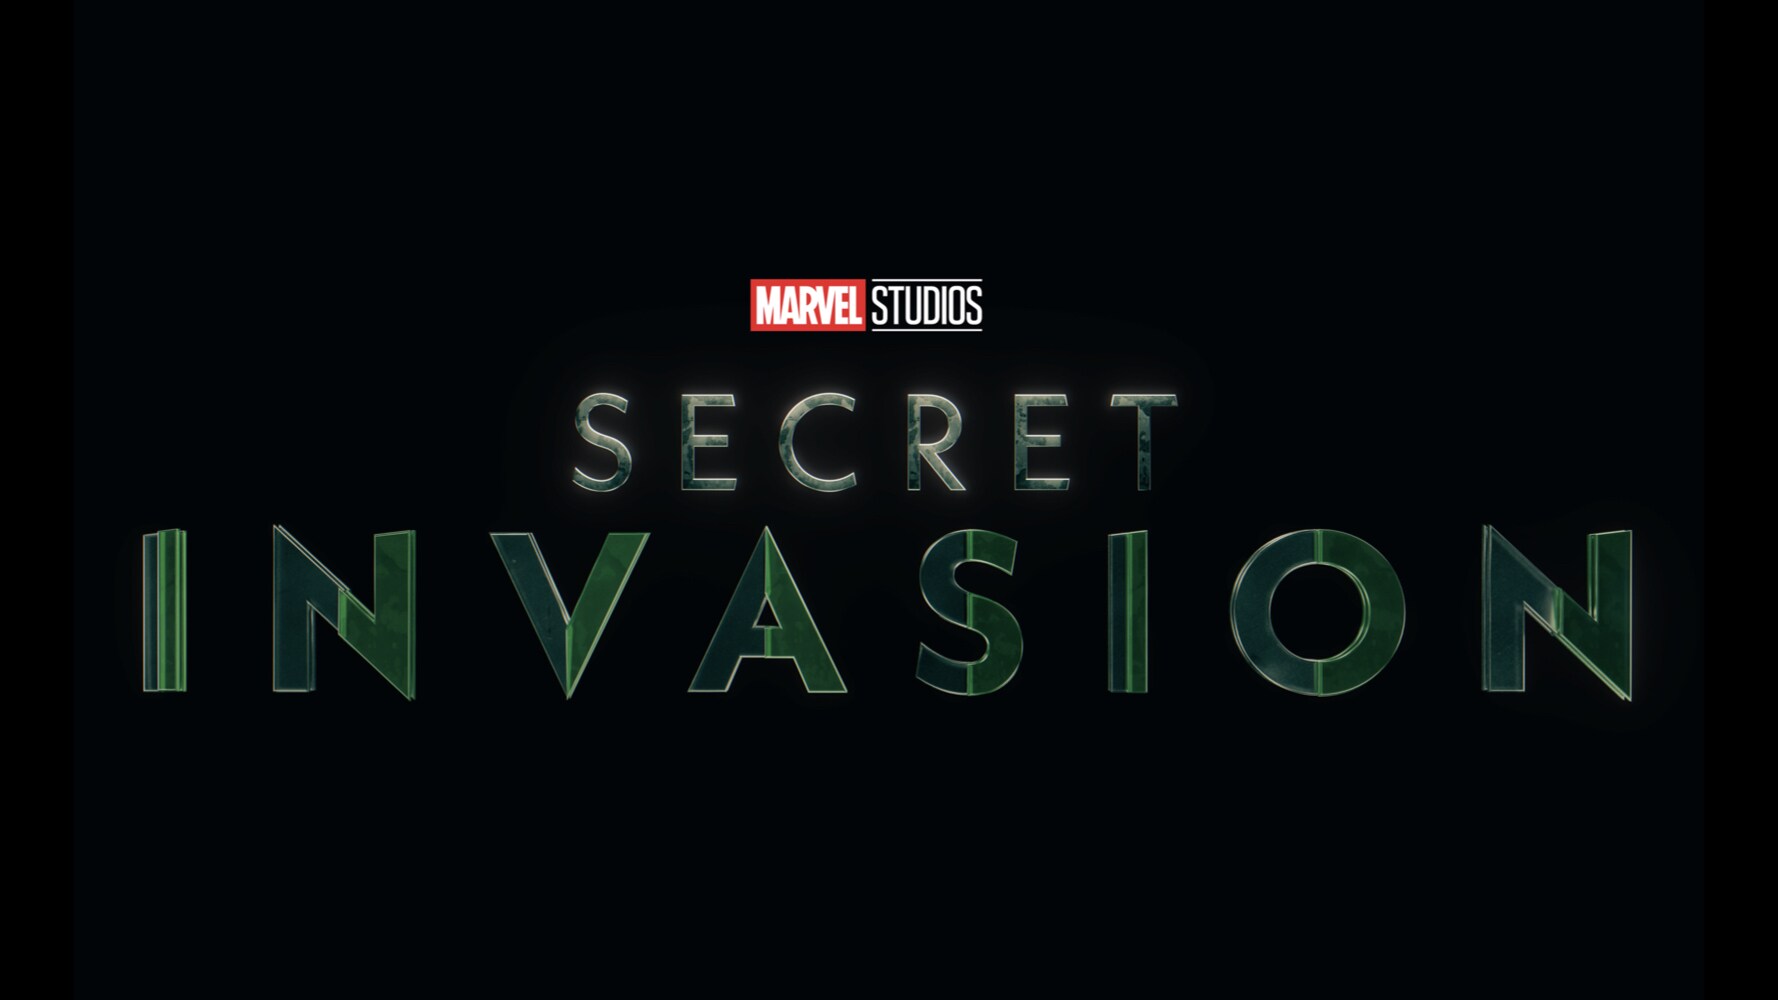 Disney+ Shares New Trailer For Marvel Studios’ “Secret Invasion”